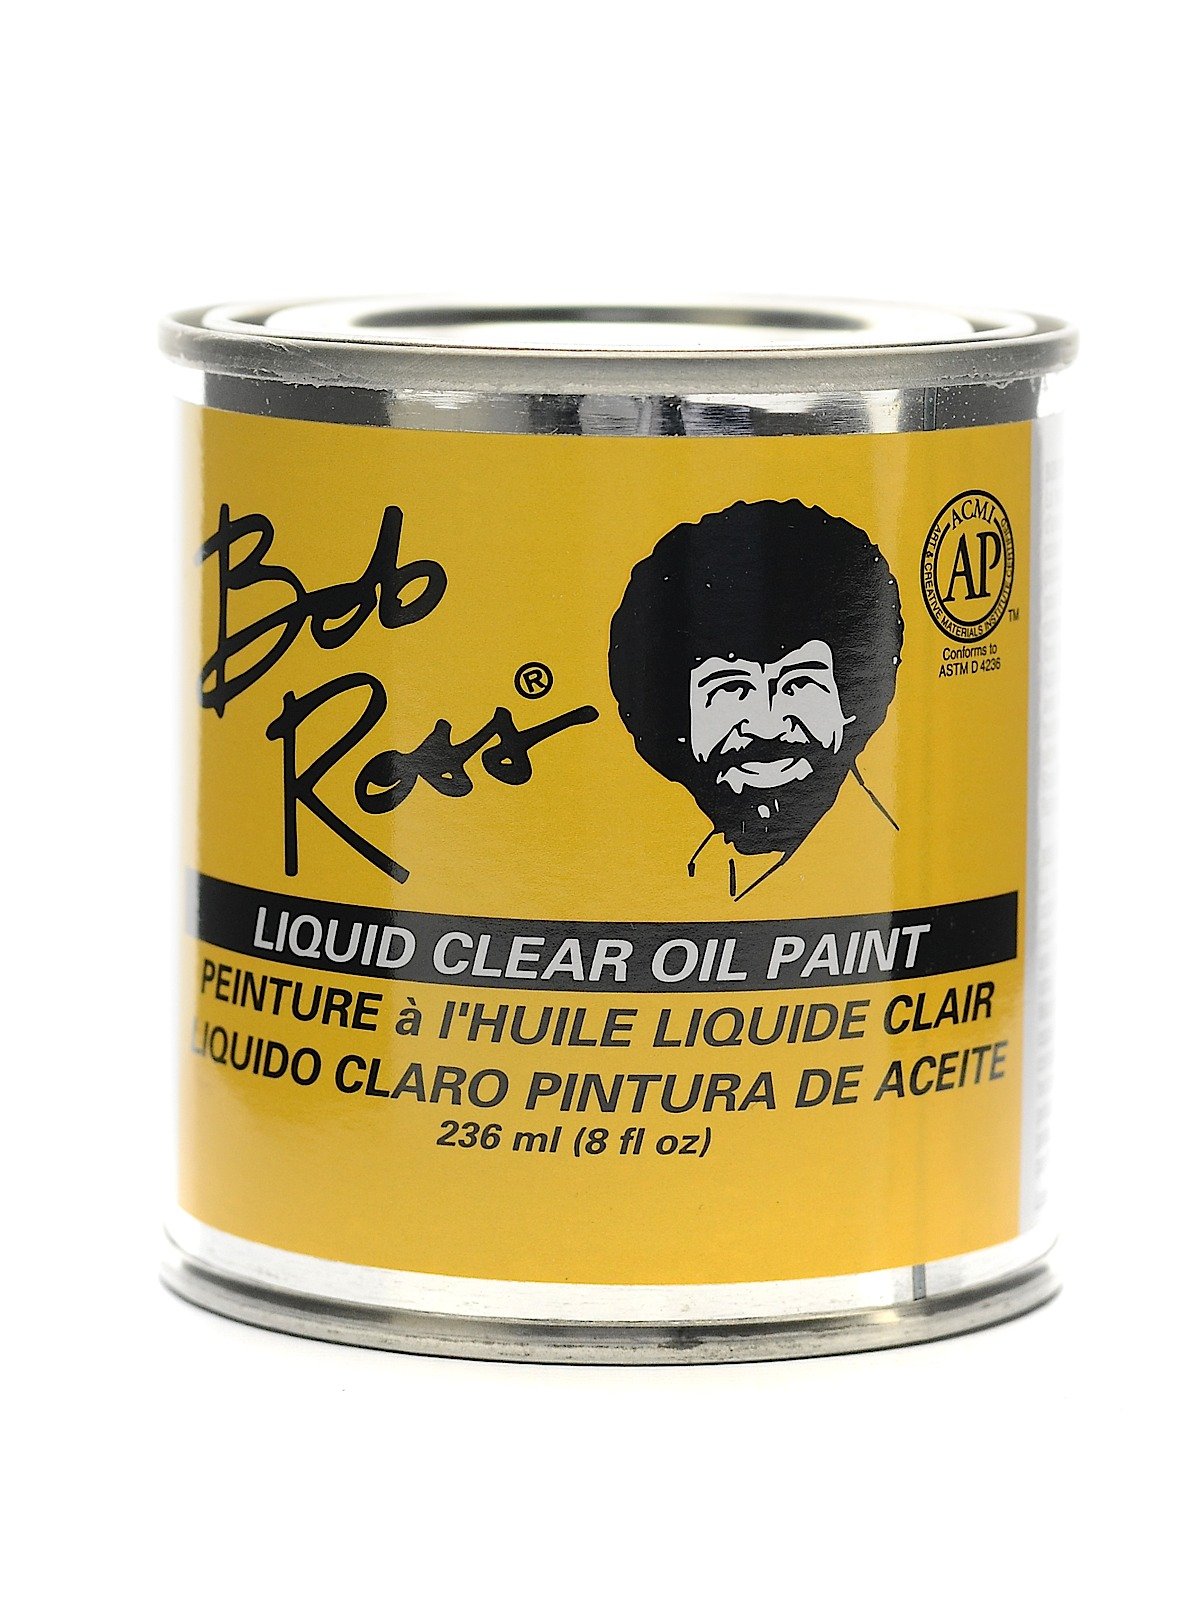 Bob Ross Background Blender Brush - 2 Width